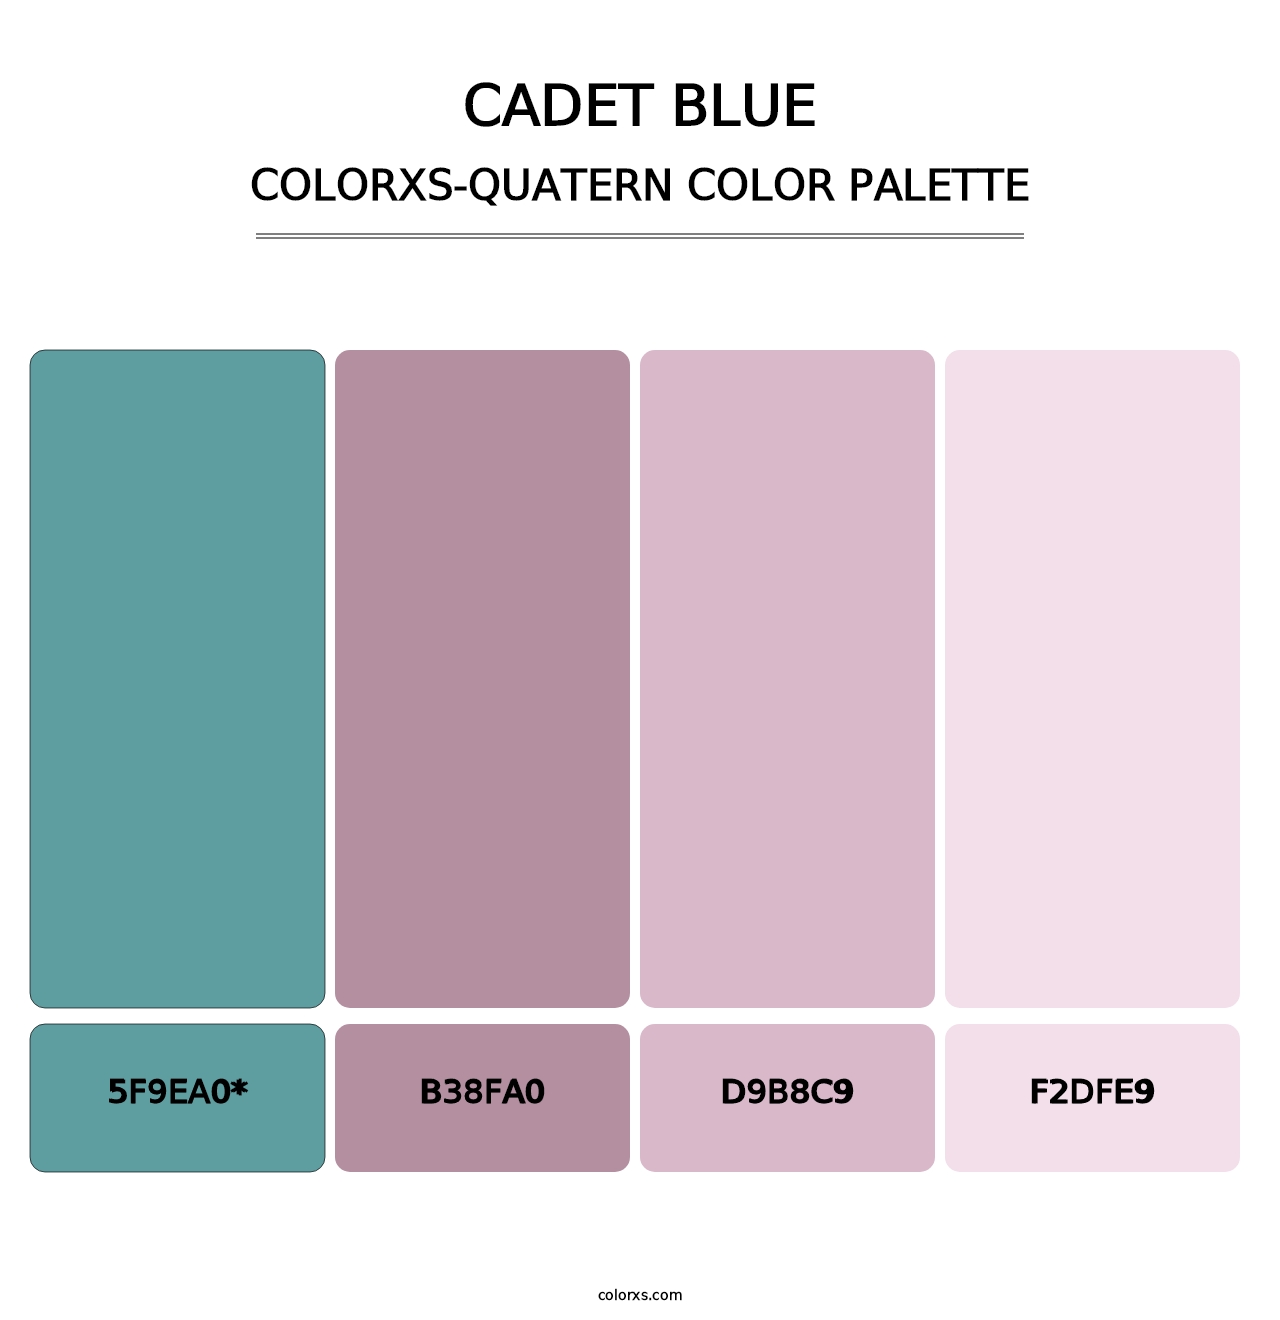 Cadet Blue - Colorxs Quatern Palette